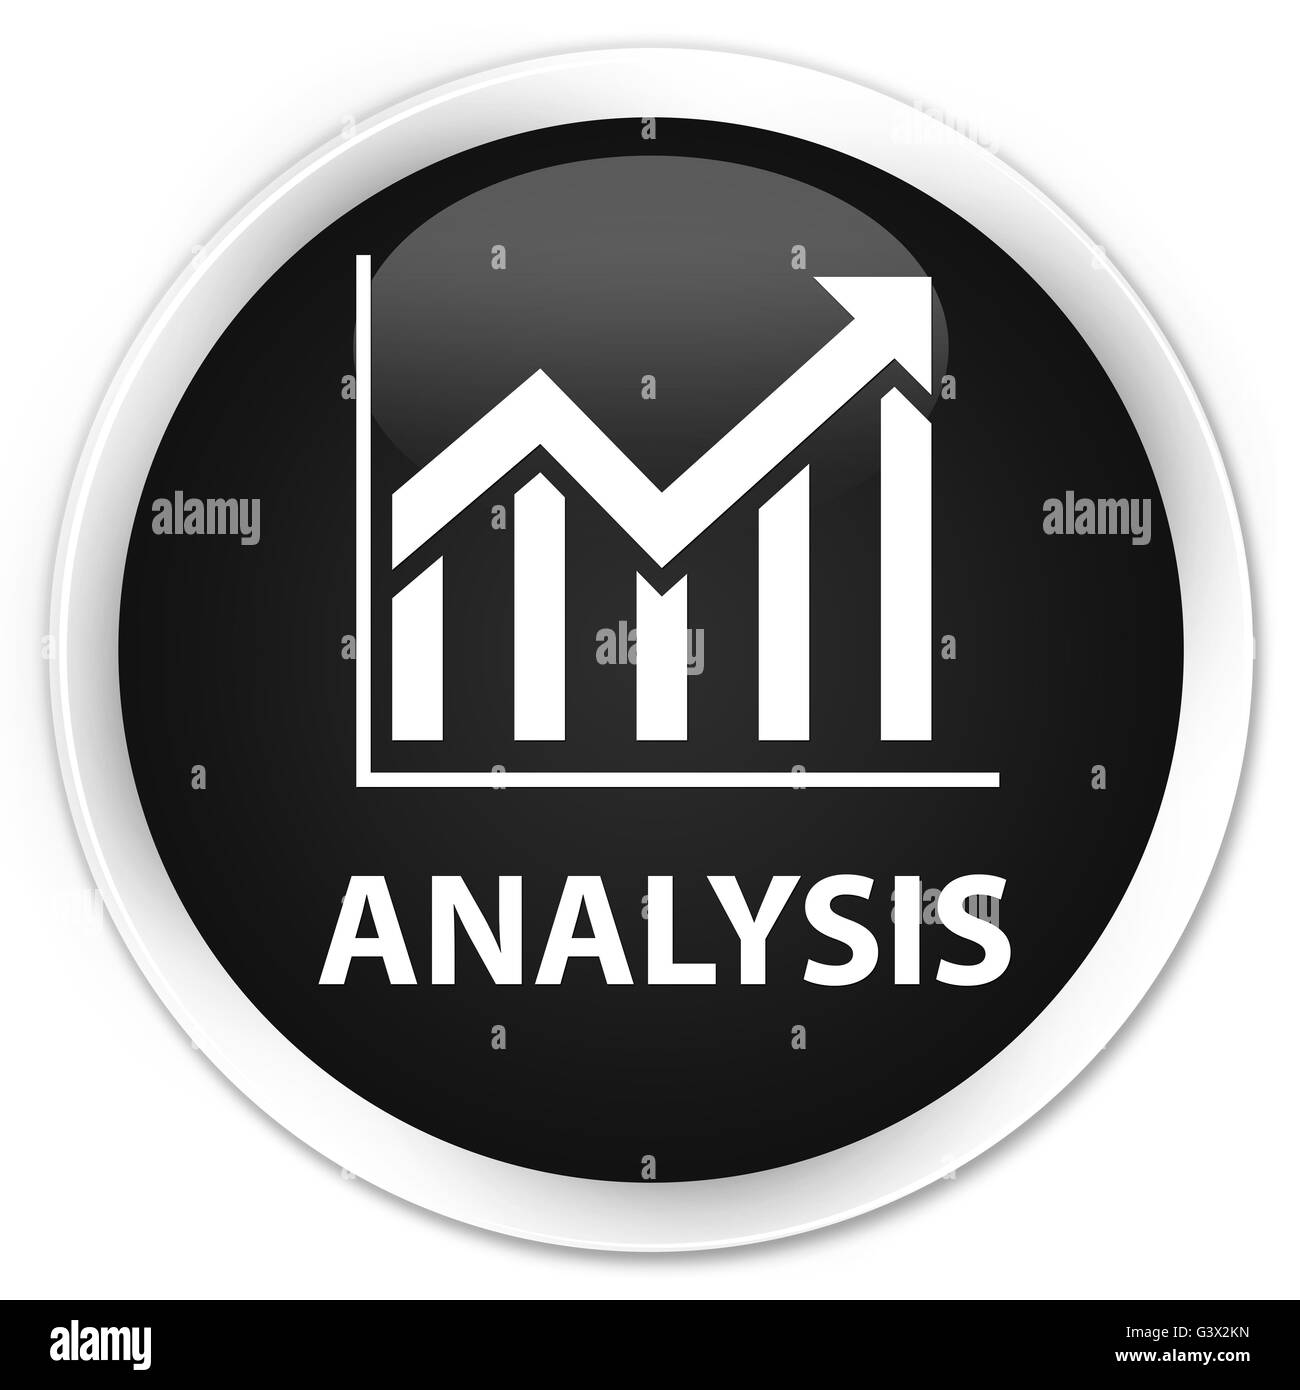 (Icône) Analyse statistique isolé sur le bouton rond noir premium abstract illustration Banque D'Images